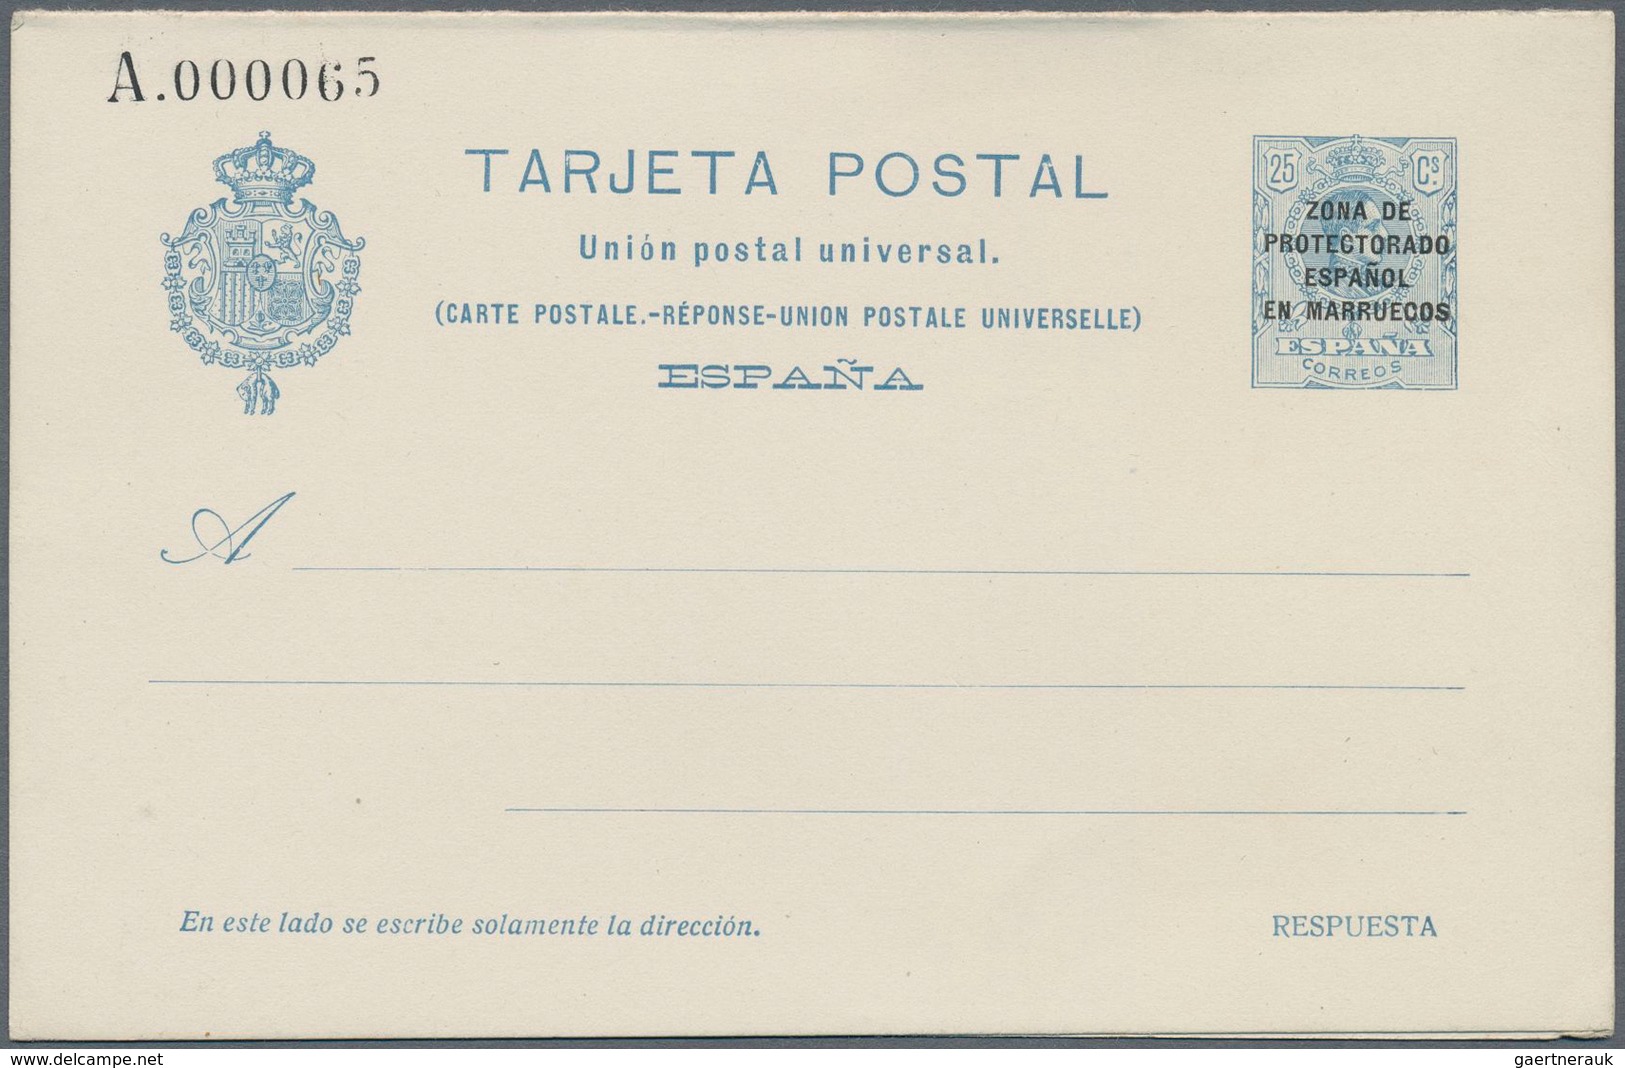 Spanien - Ganzsachen: 1924. Lot of 4 postcards Alfonso XIII Medallón "Zona de Protectorado Espanol e